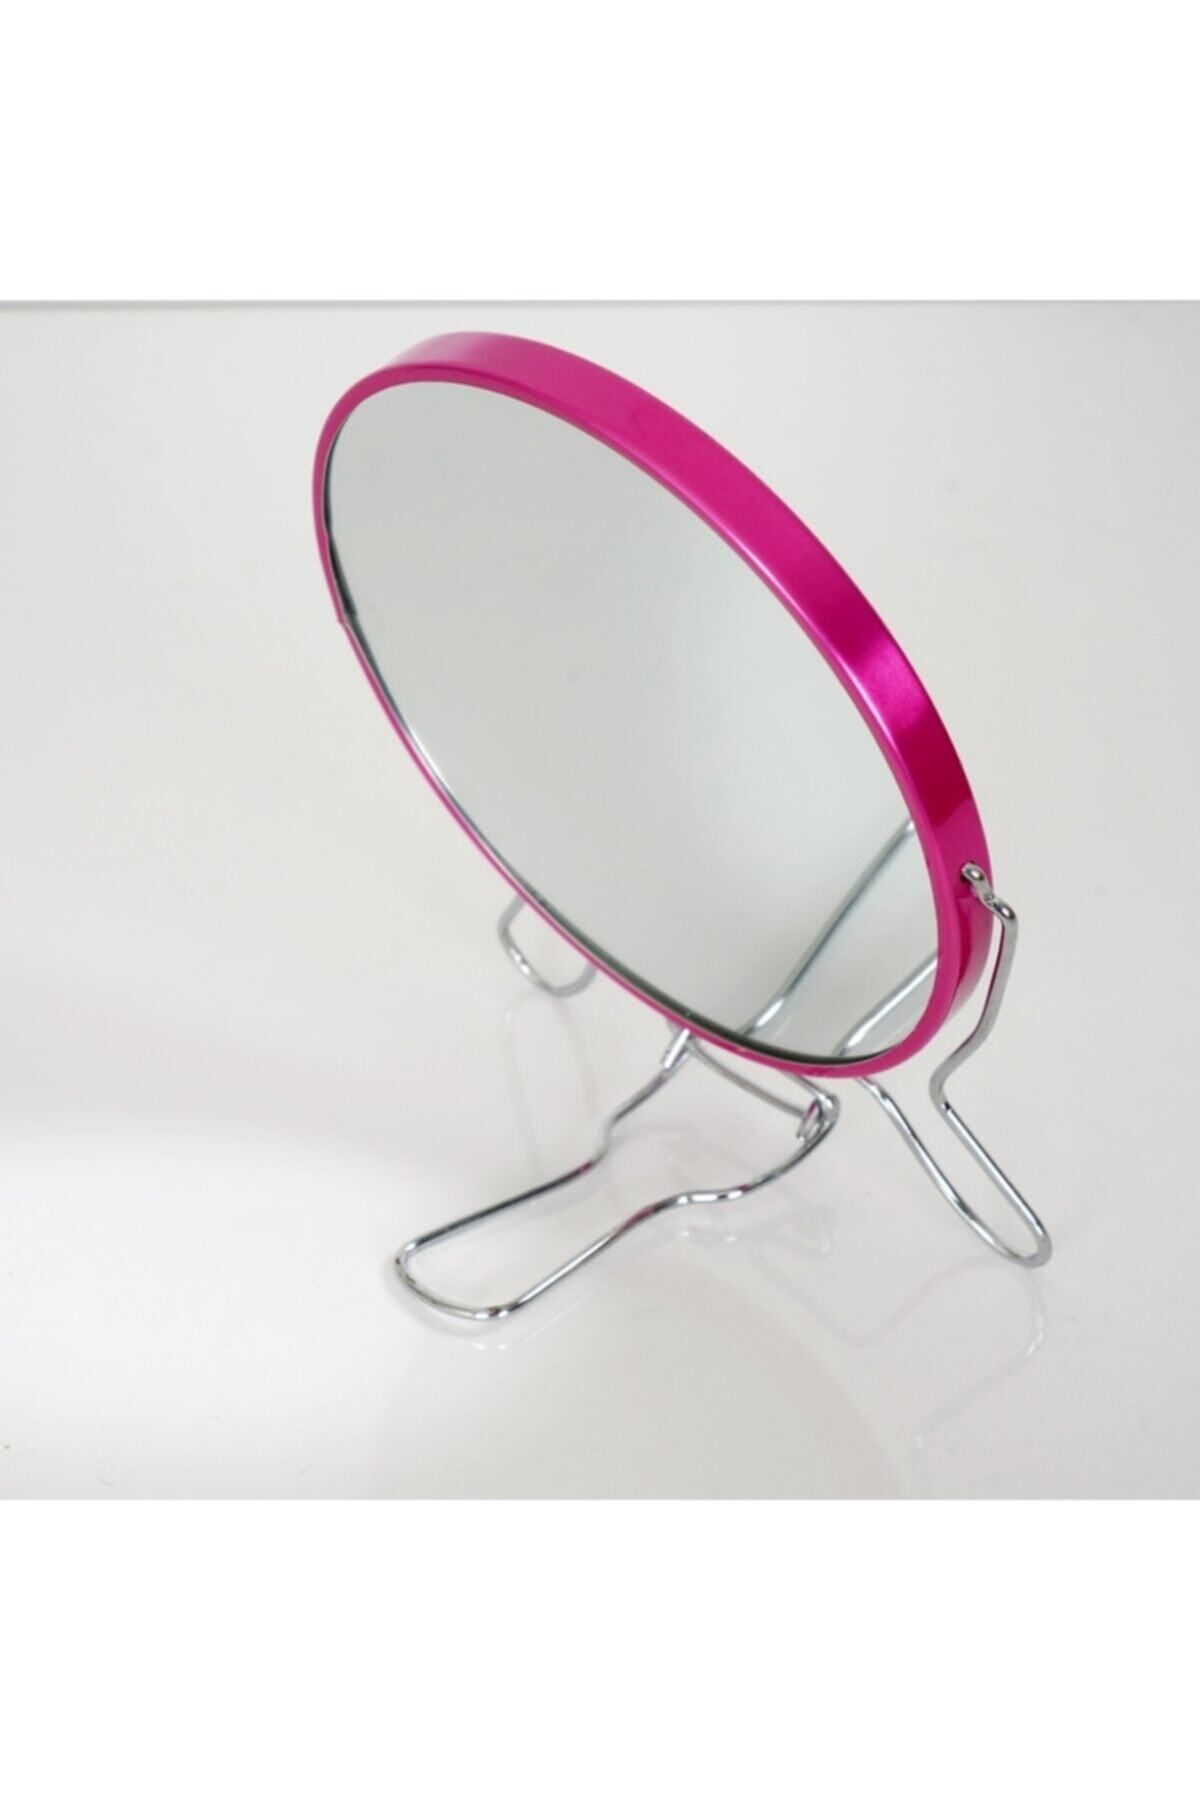 issevenler Çift Taraflı Büyüteçli Makyaj Aynası 5’’ Masa Üstü Aynası 14,5 Cm